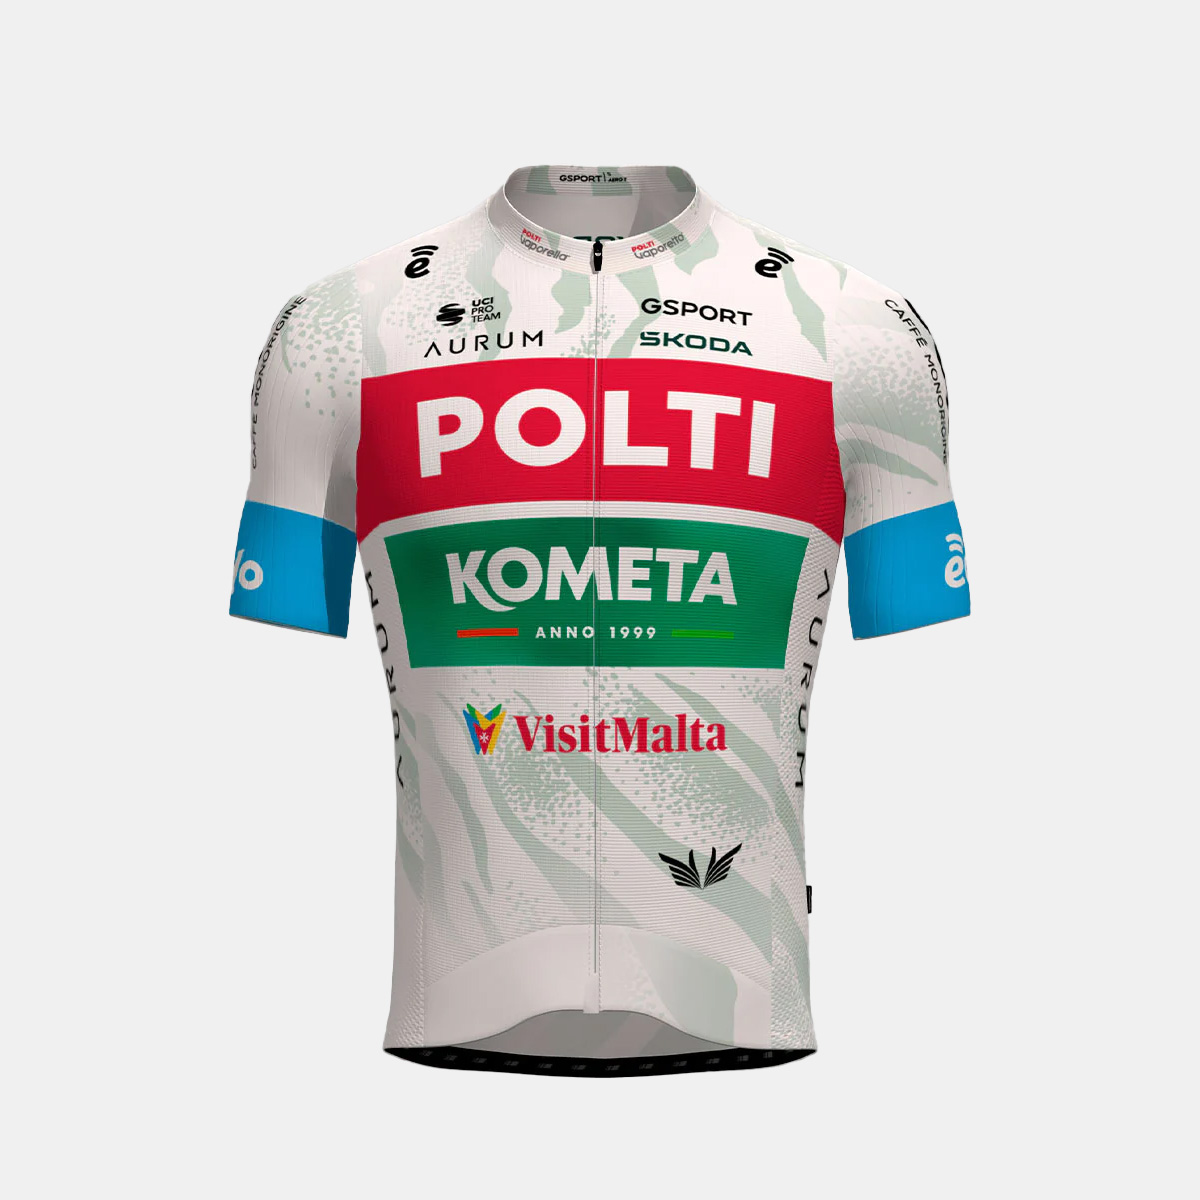 Camisola oficial Team Polti Kometa